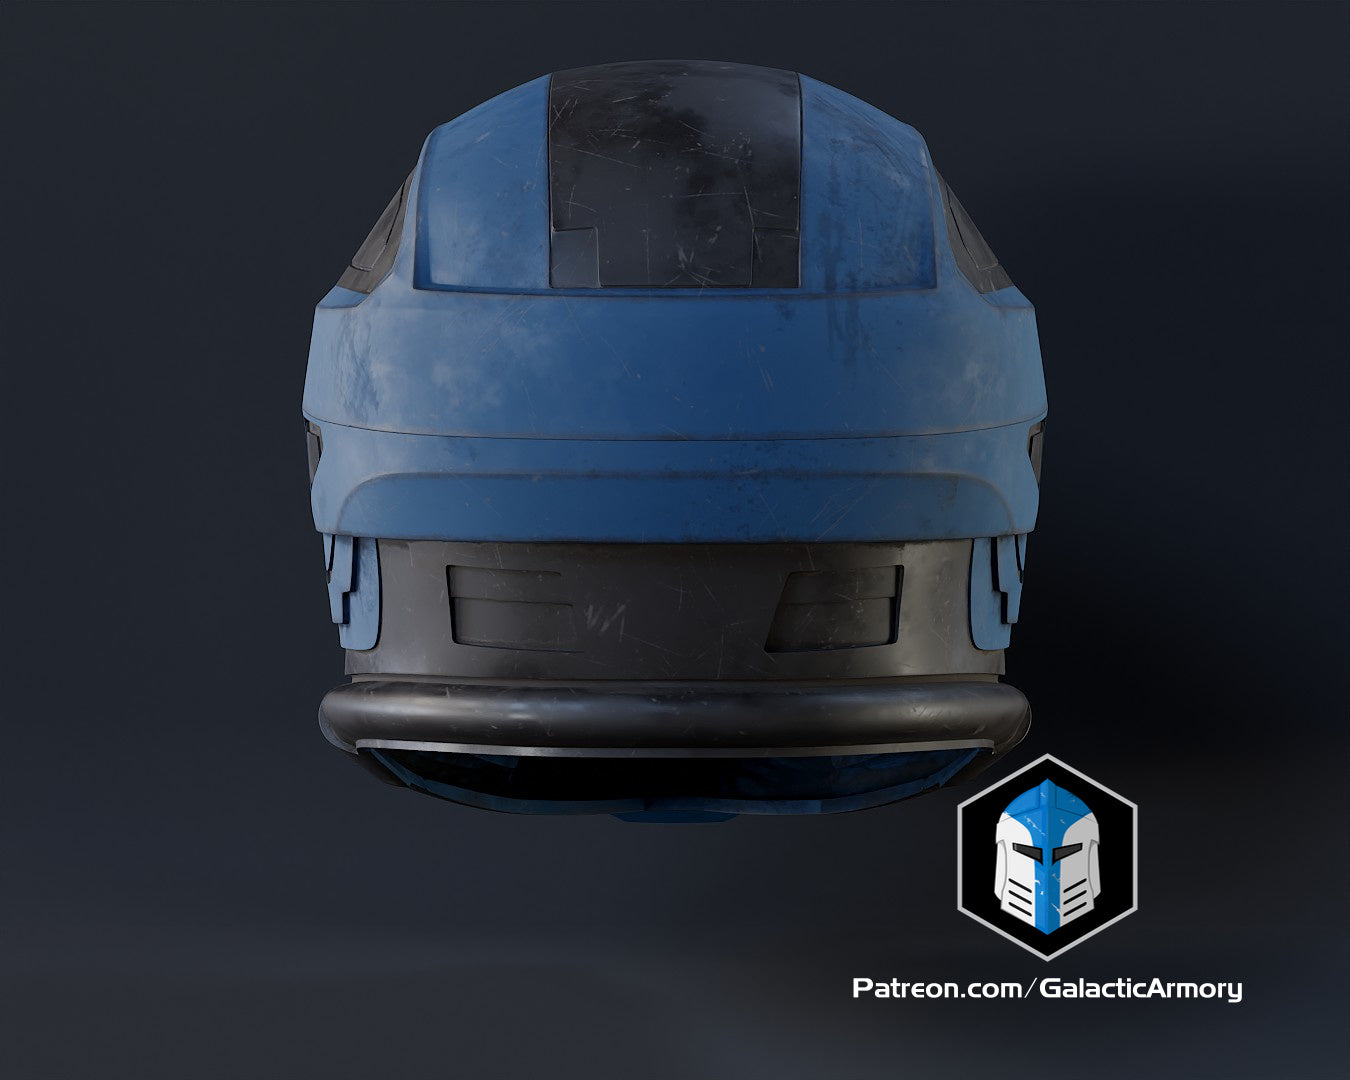 Halo Recon Helmet - 3D Print Files